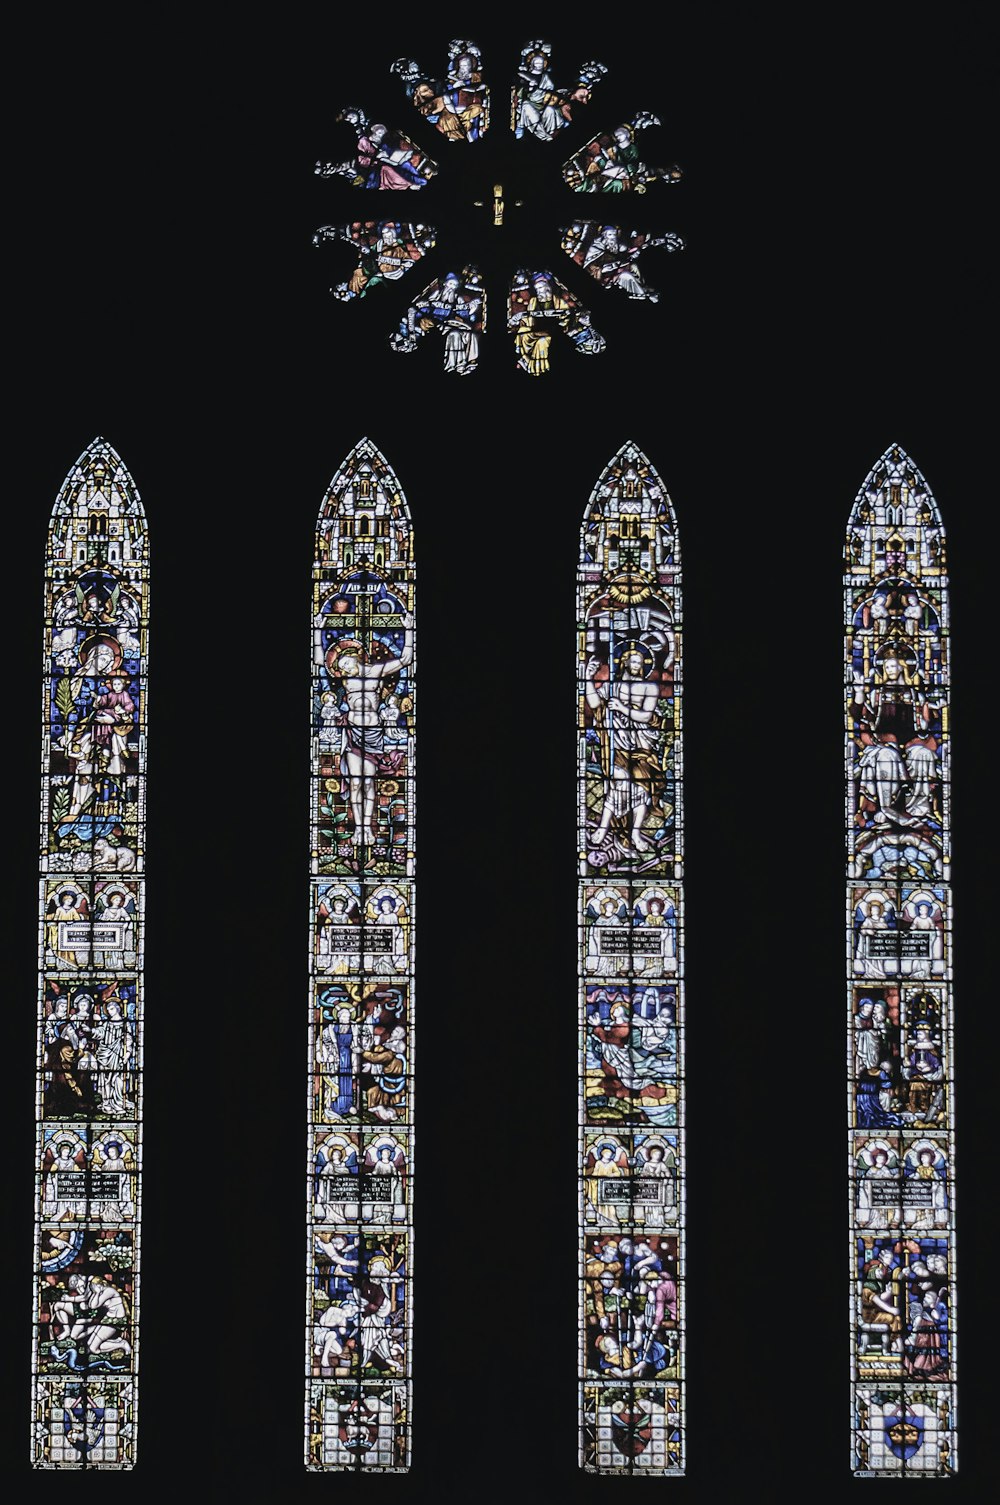 eine Nahaufnahme der Kathedrale von Chartres